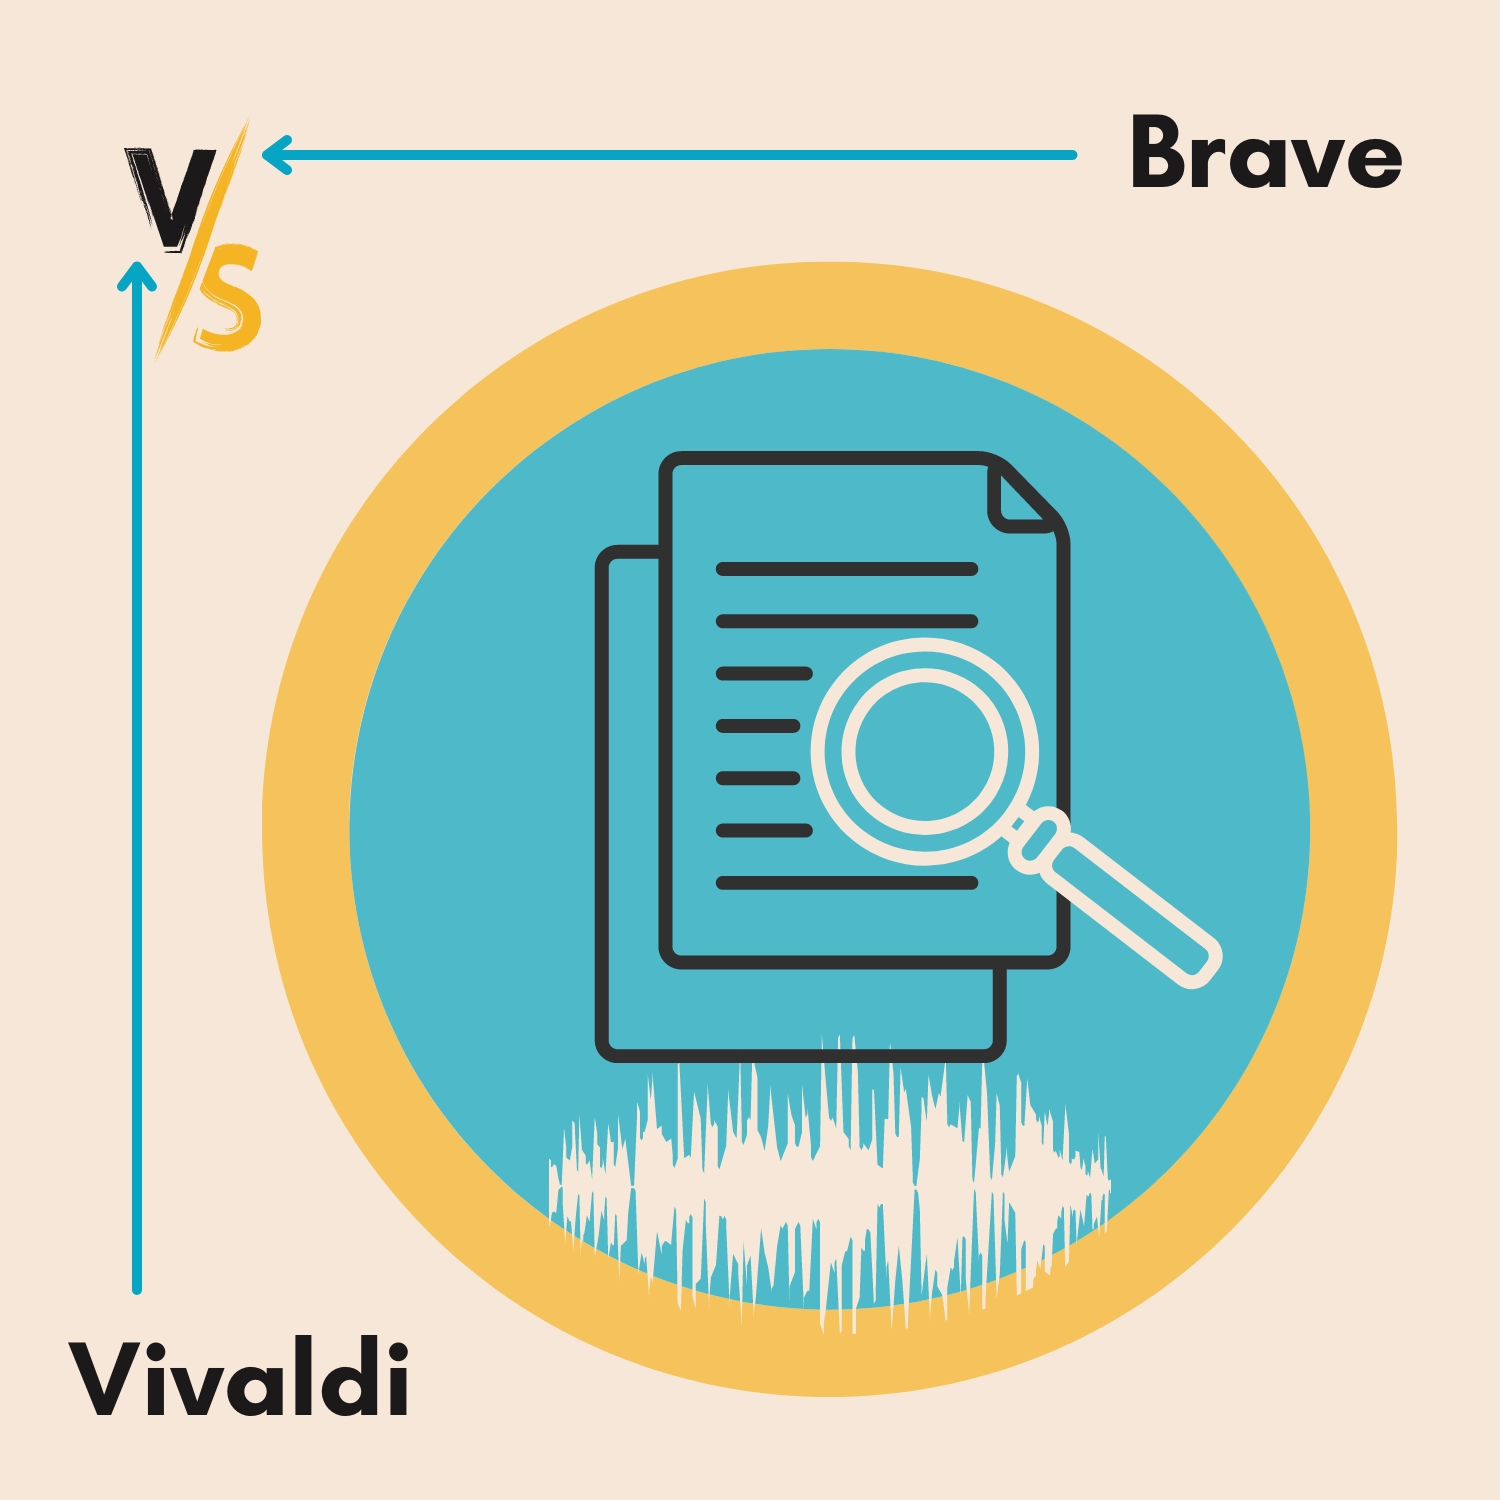 Brave vs. Vivaldi